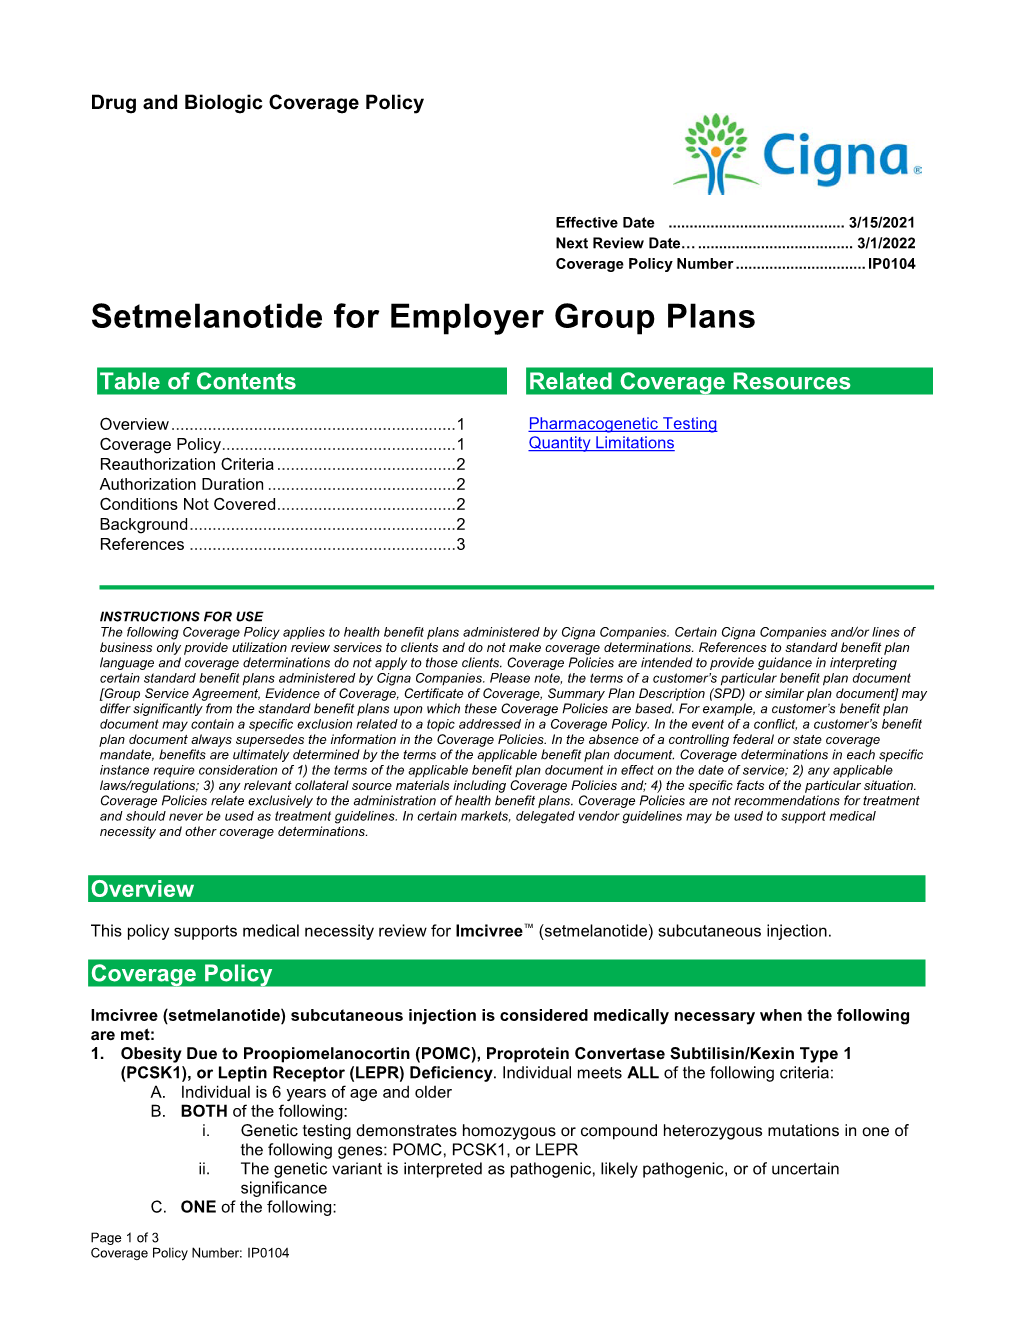 Setmelanotide for Employer Group Plans